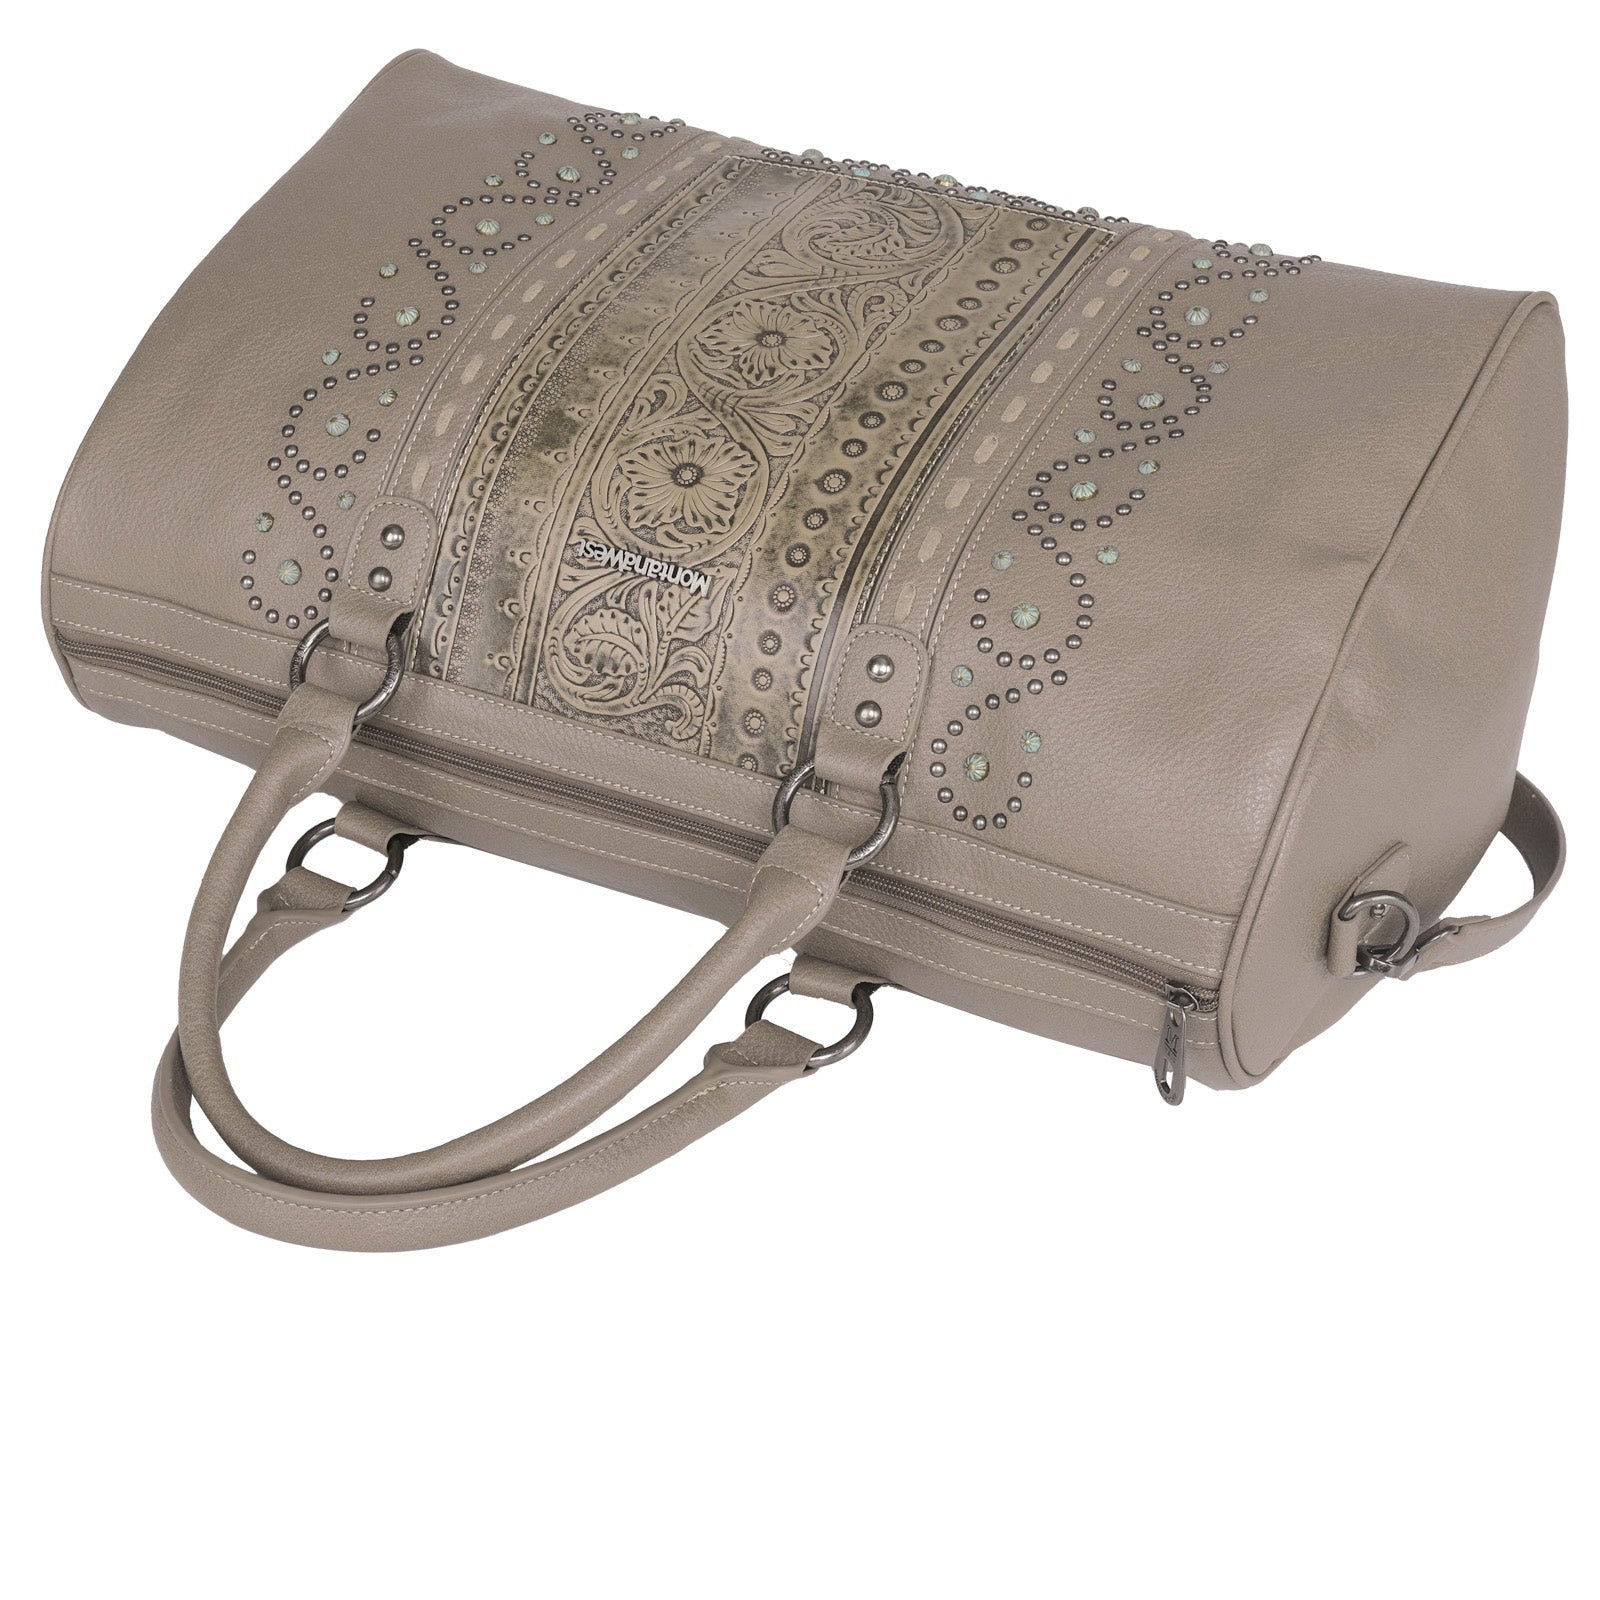 Western Purse Duffle Bag Leather Tassen & portemonnees Bagage & Reizen Duffelbags Vintage Floral Embossed Handbag Tooling Weekender Bag Travel Accessories Purse 